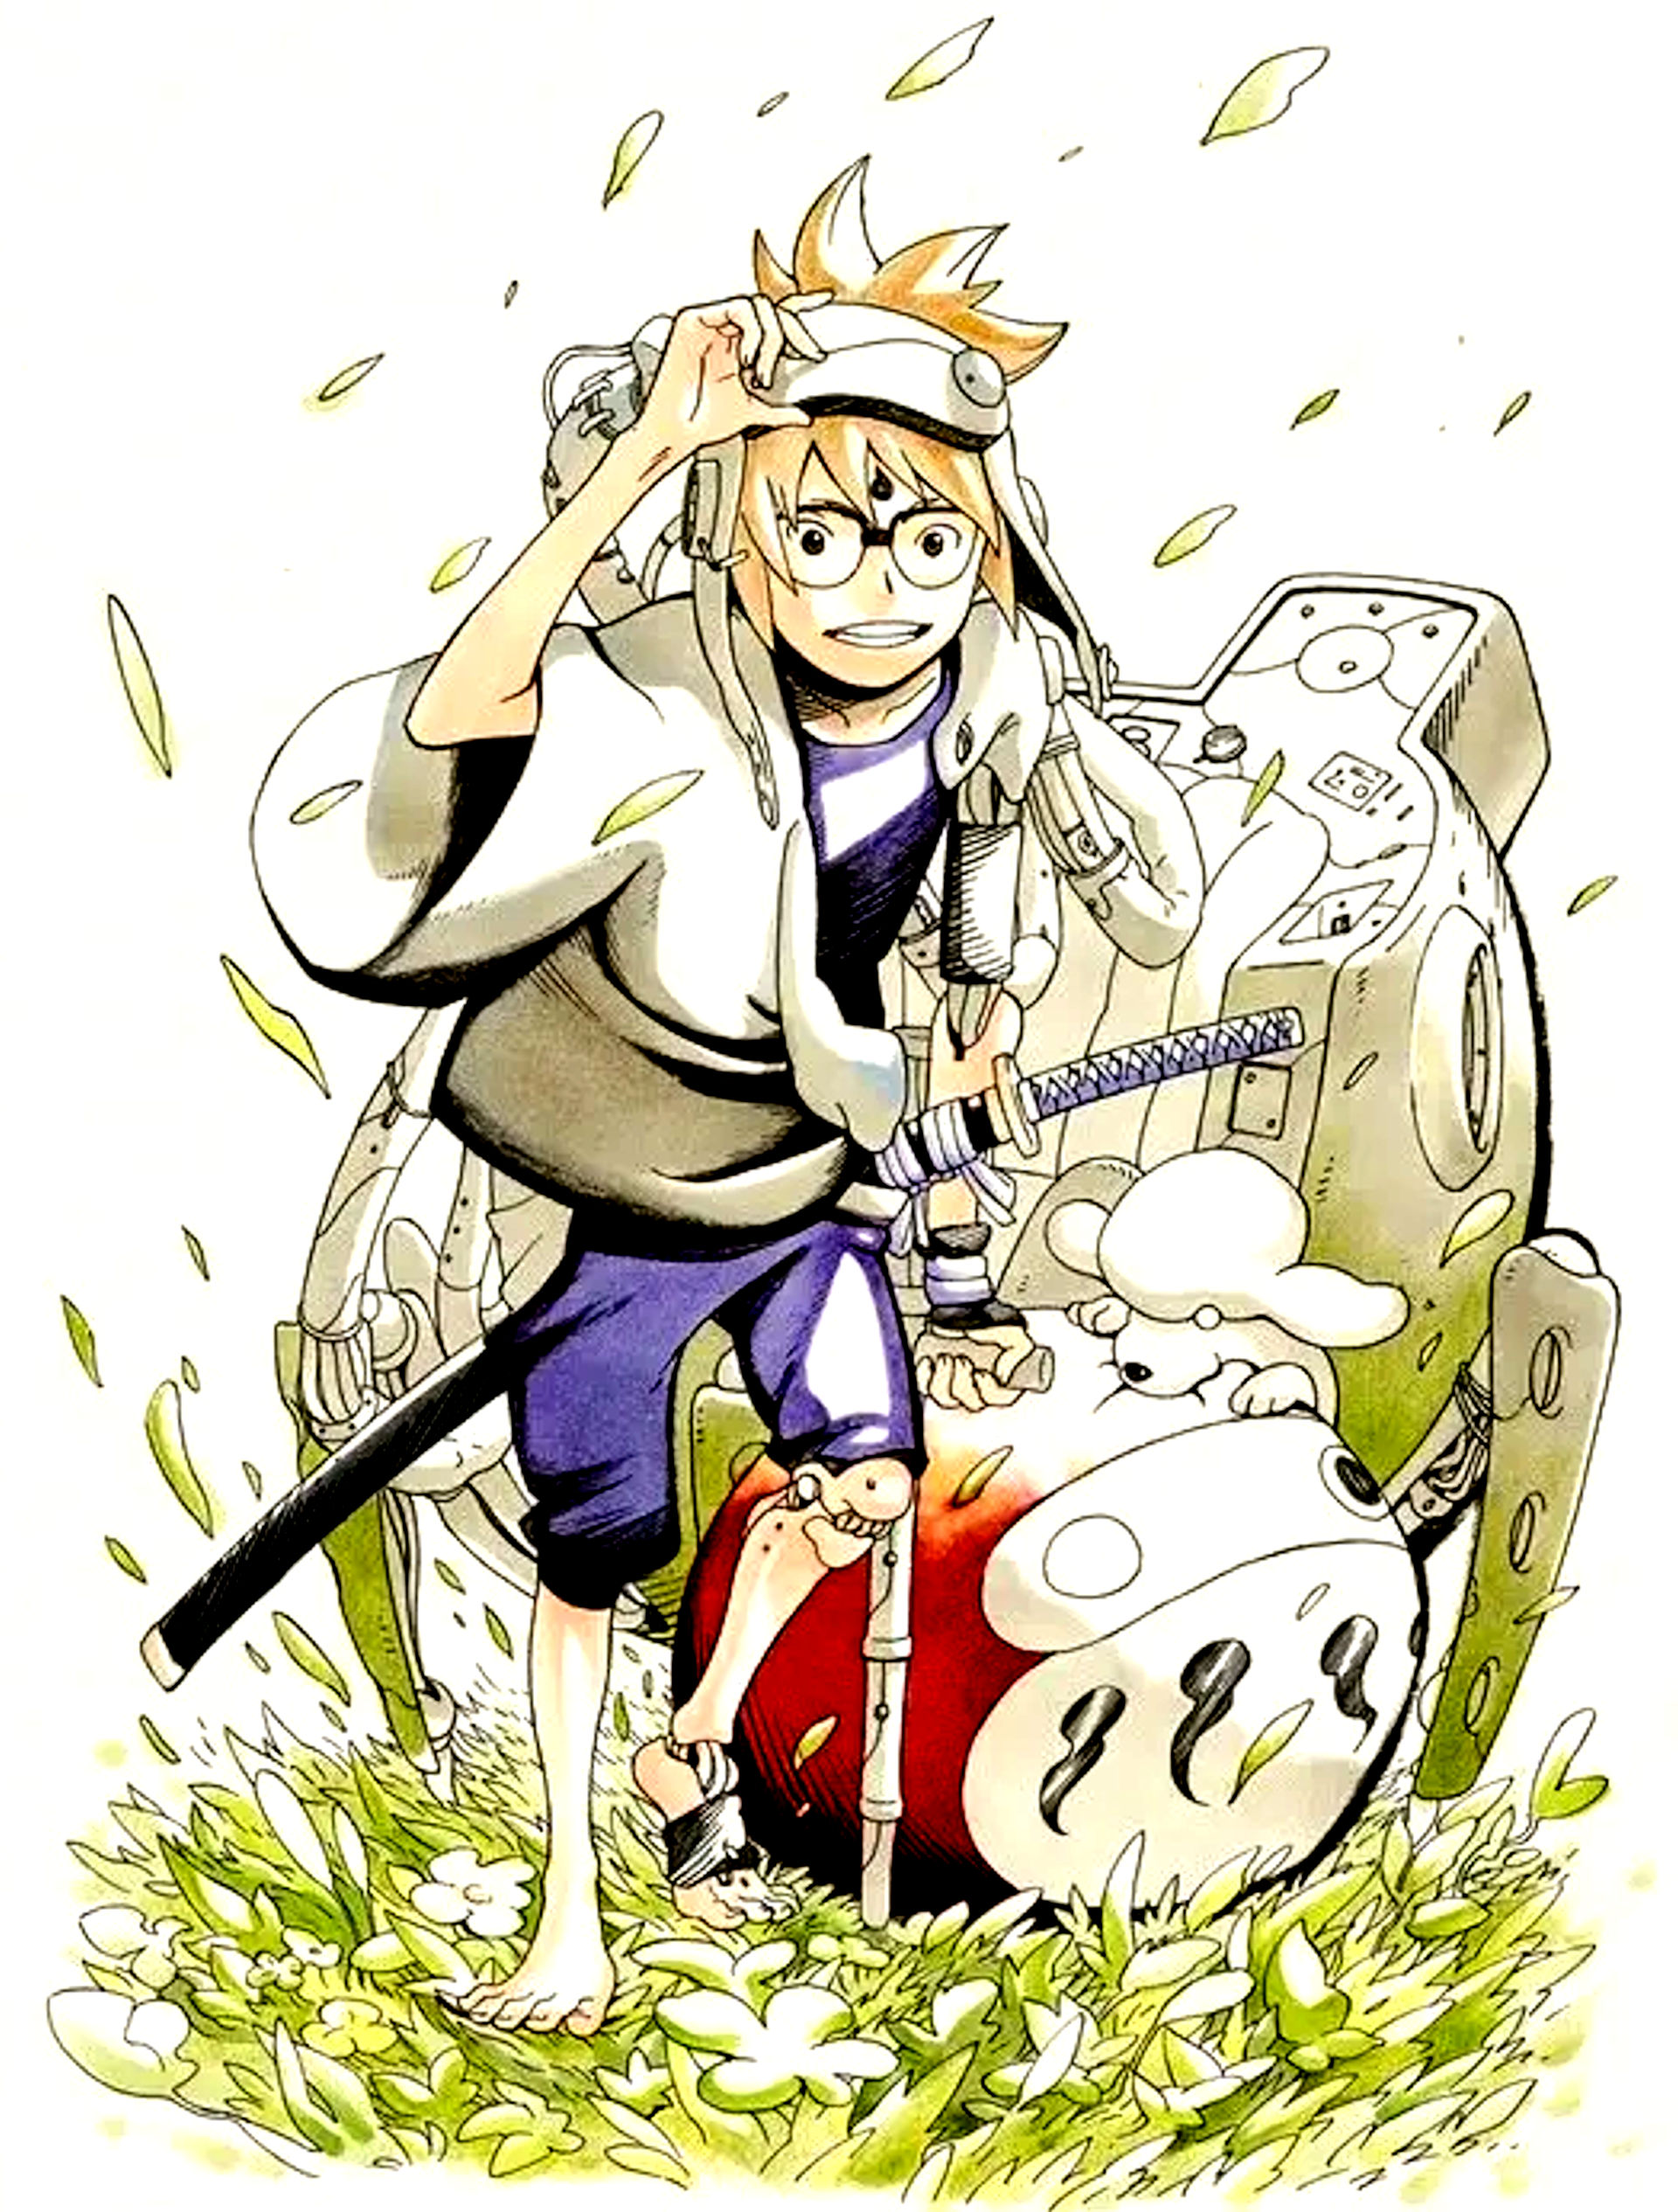 Samurai 8: La leggenda di Hachimaru: il fallimento del manga di fantascienza del creatore di Naruto